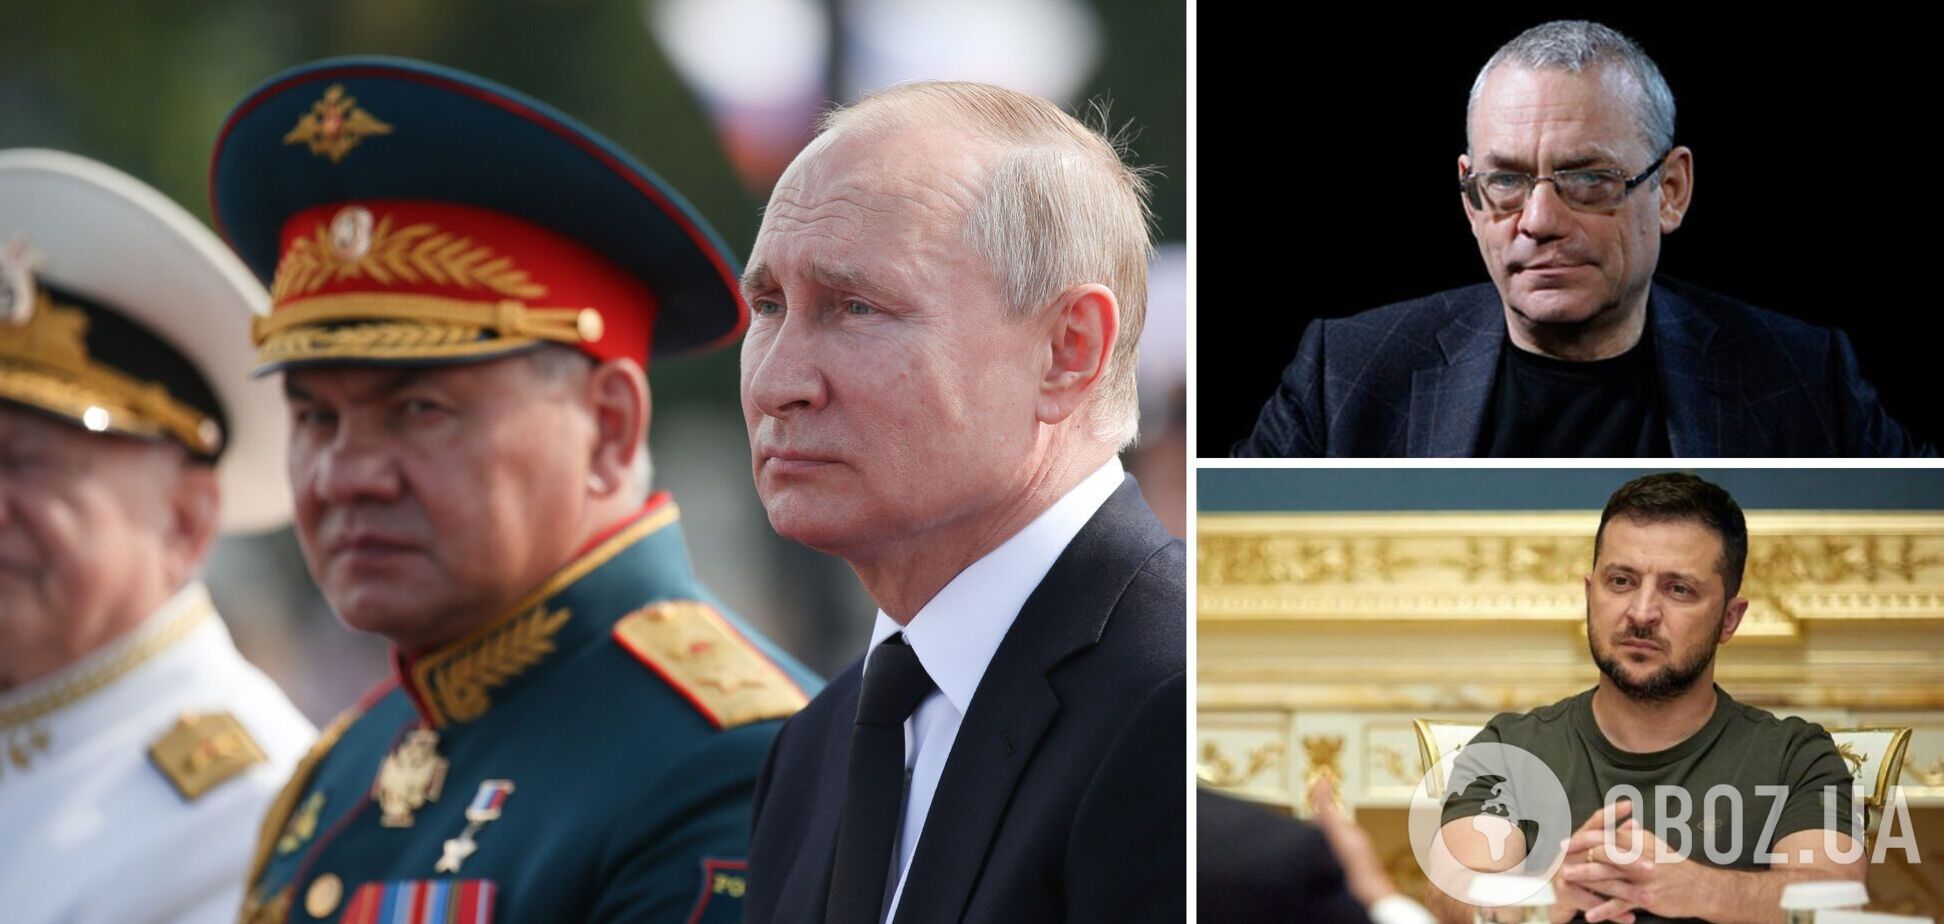 Яковенко: Путин ломает себе хребет, проигрывает, но верит в ядерный шантаж и замерзшую Европу. Интервью